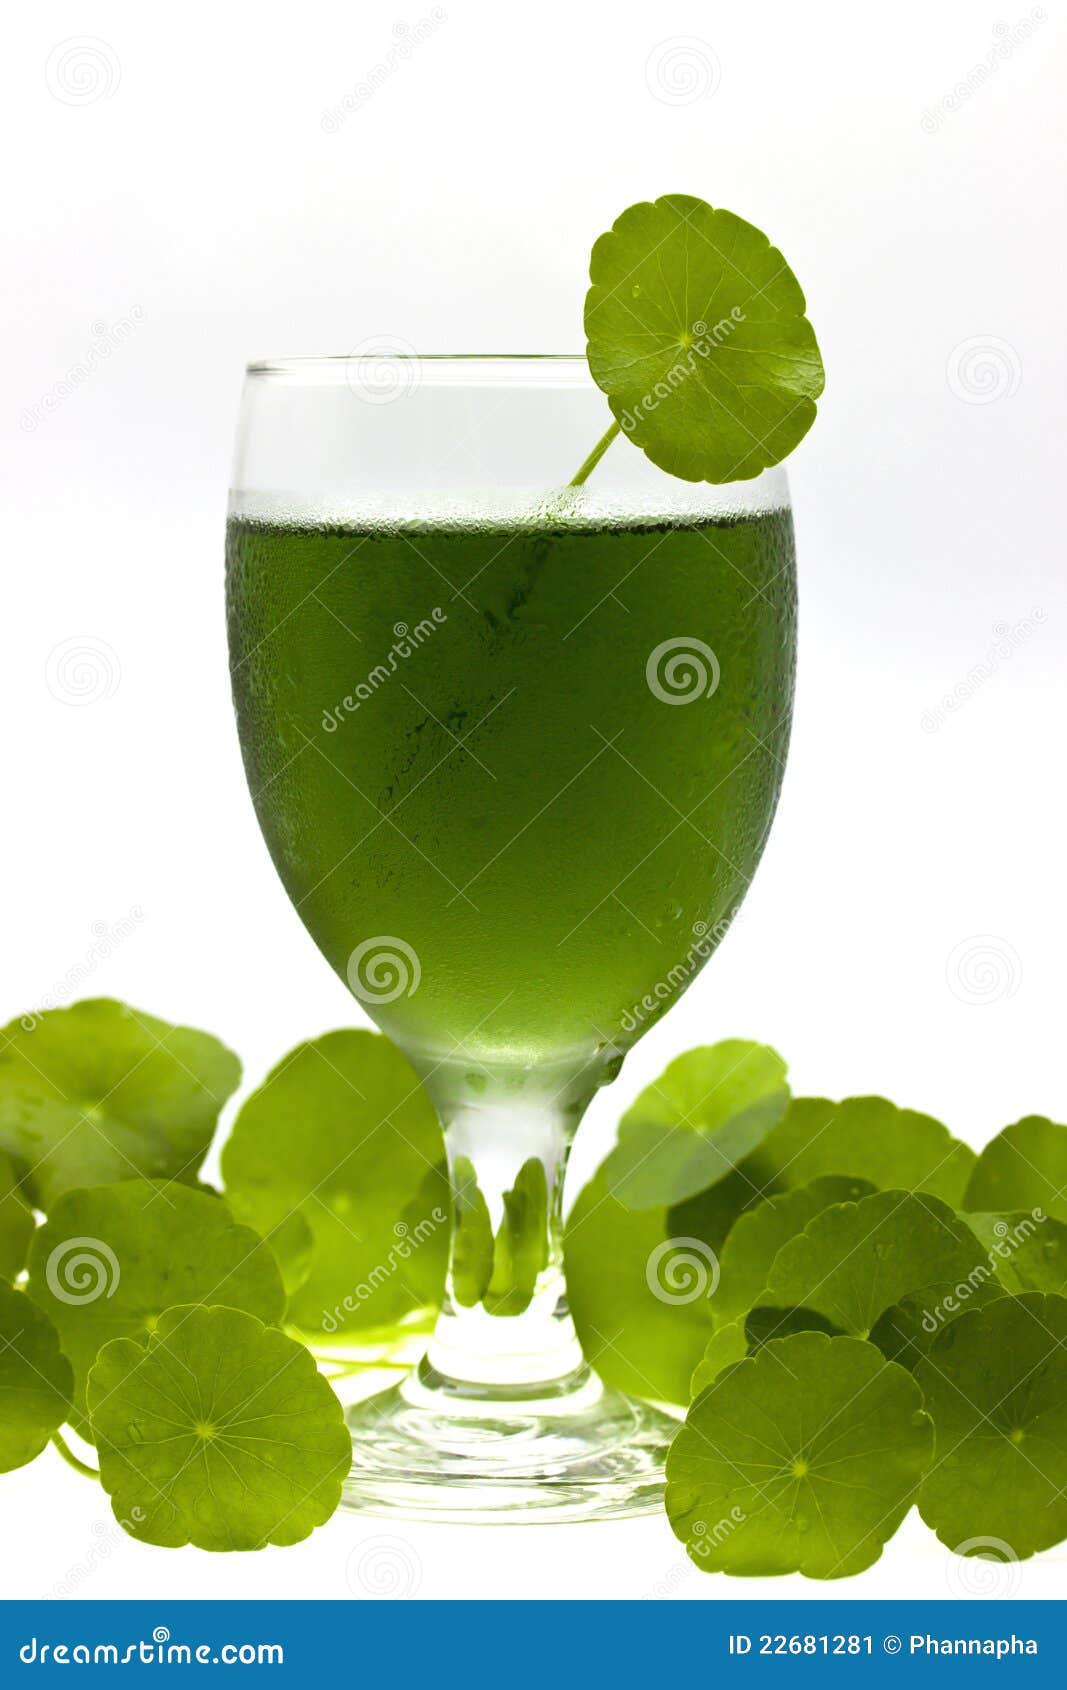 chlorophyll drink